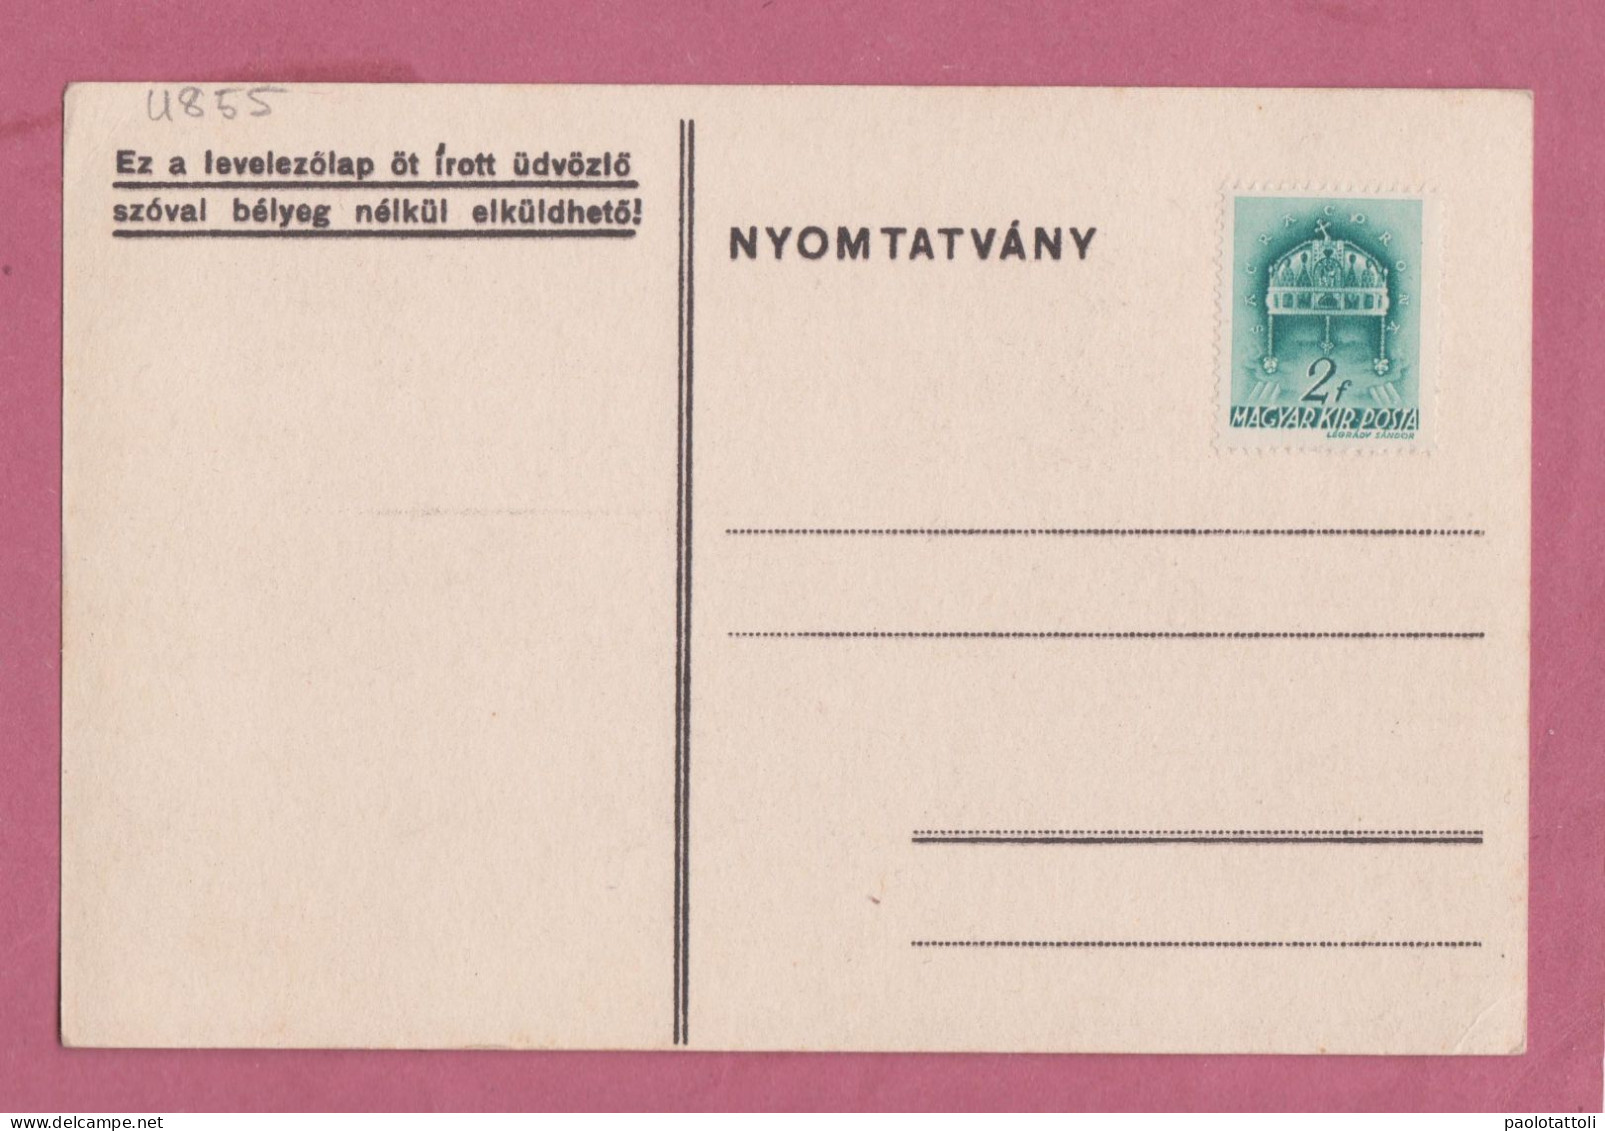 Magyar, Unghery- Propaganda Post Card.- Proteggi Il Tuo Raccolto Dal Gelo.protect Your Crop Against Frostbite- - Partiti Politici & Elezioni